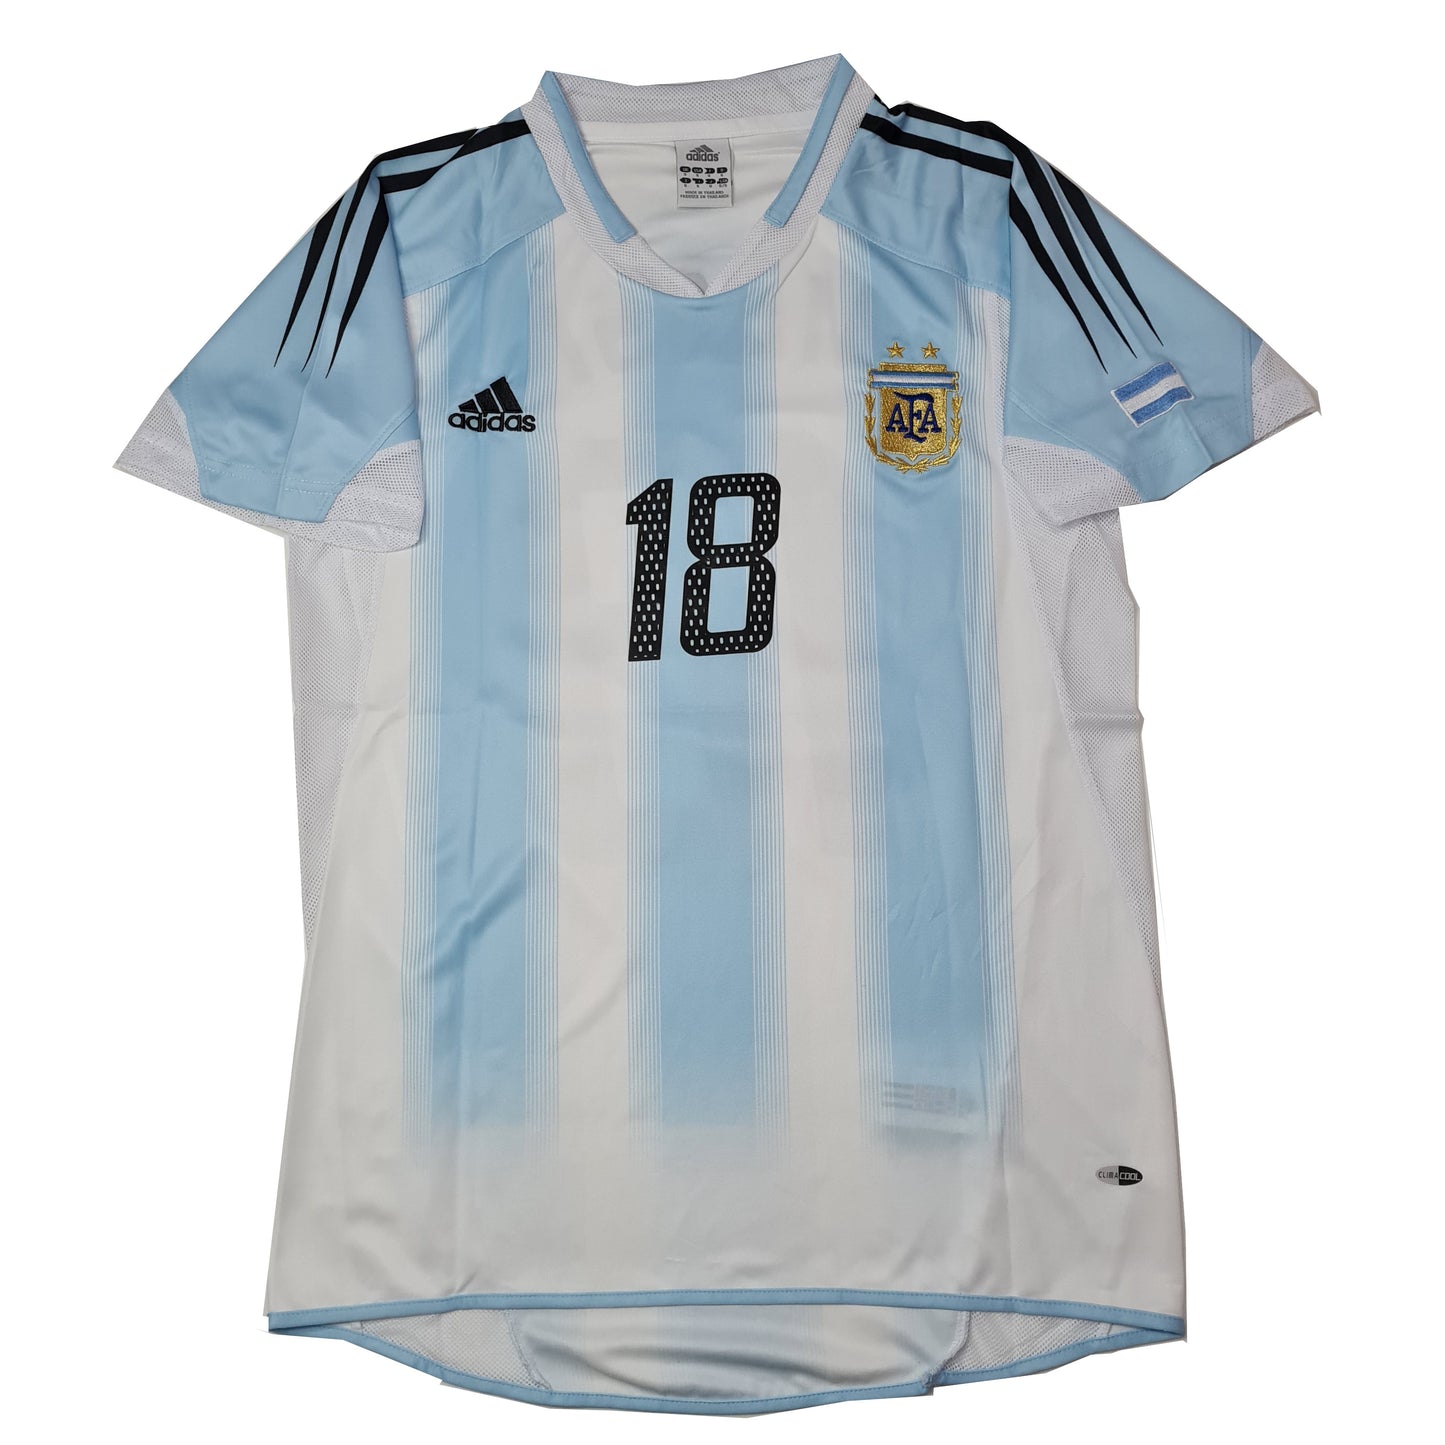 Argentina Titular 2004/05 ✈️